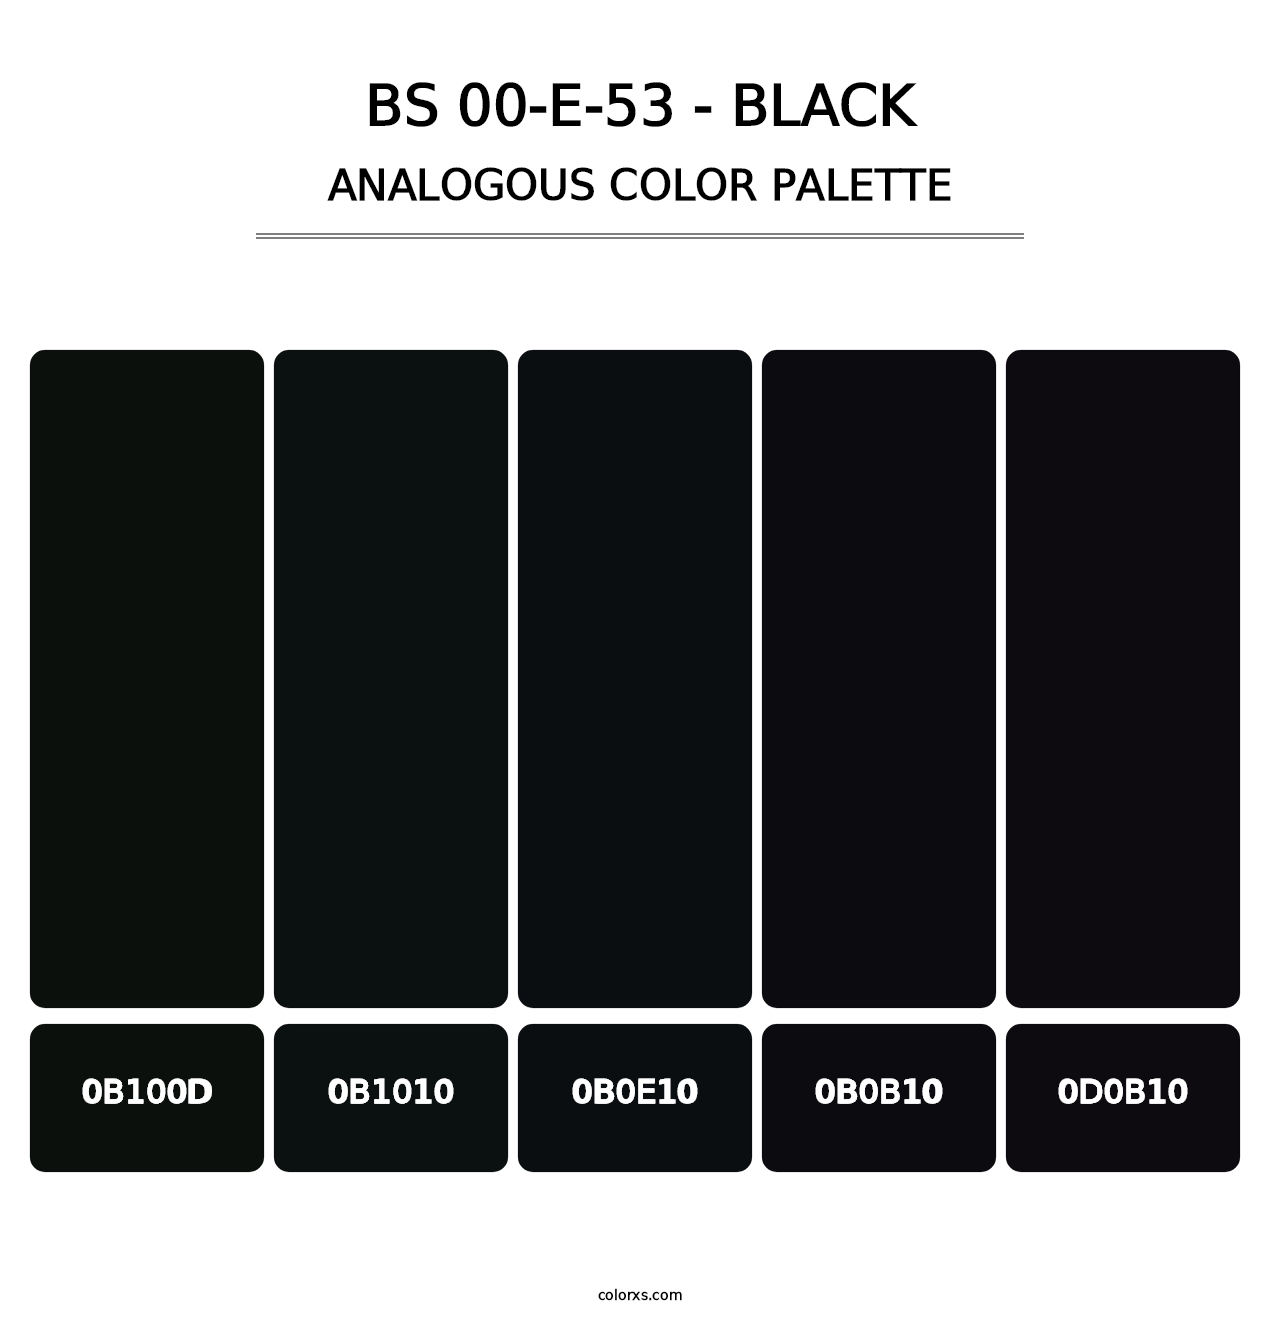 BS 00-E-53 - Black - Analogous Color Palette